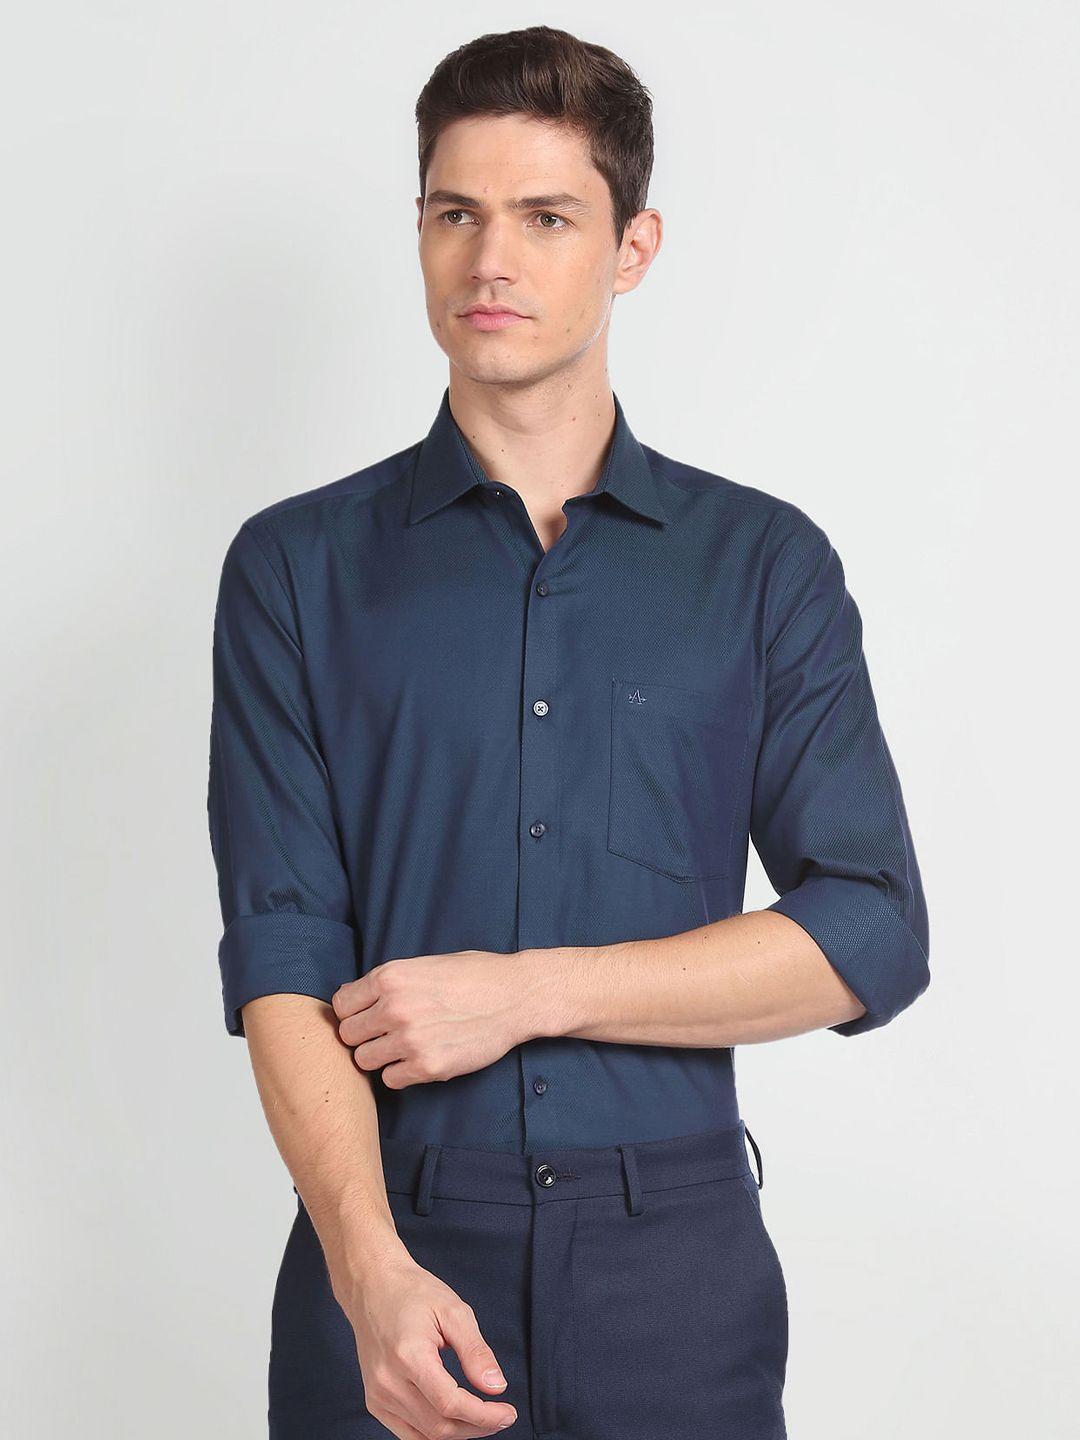 arrow-spread-collar-pure-cotton-casual-shirt